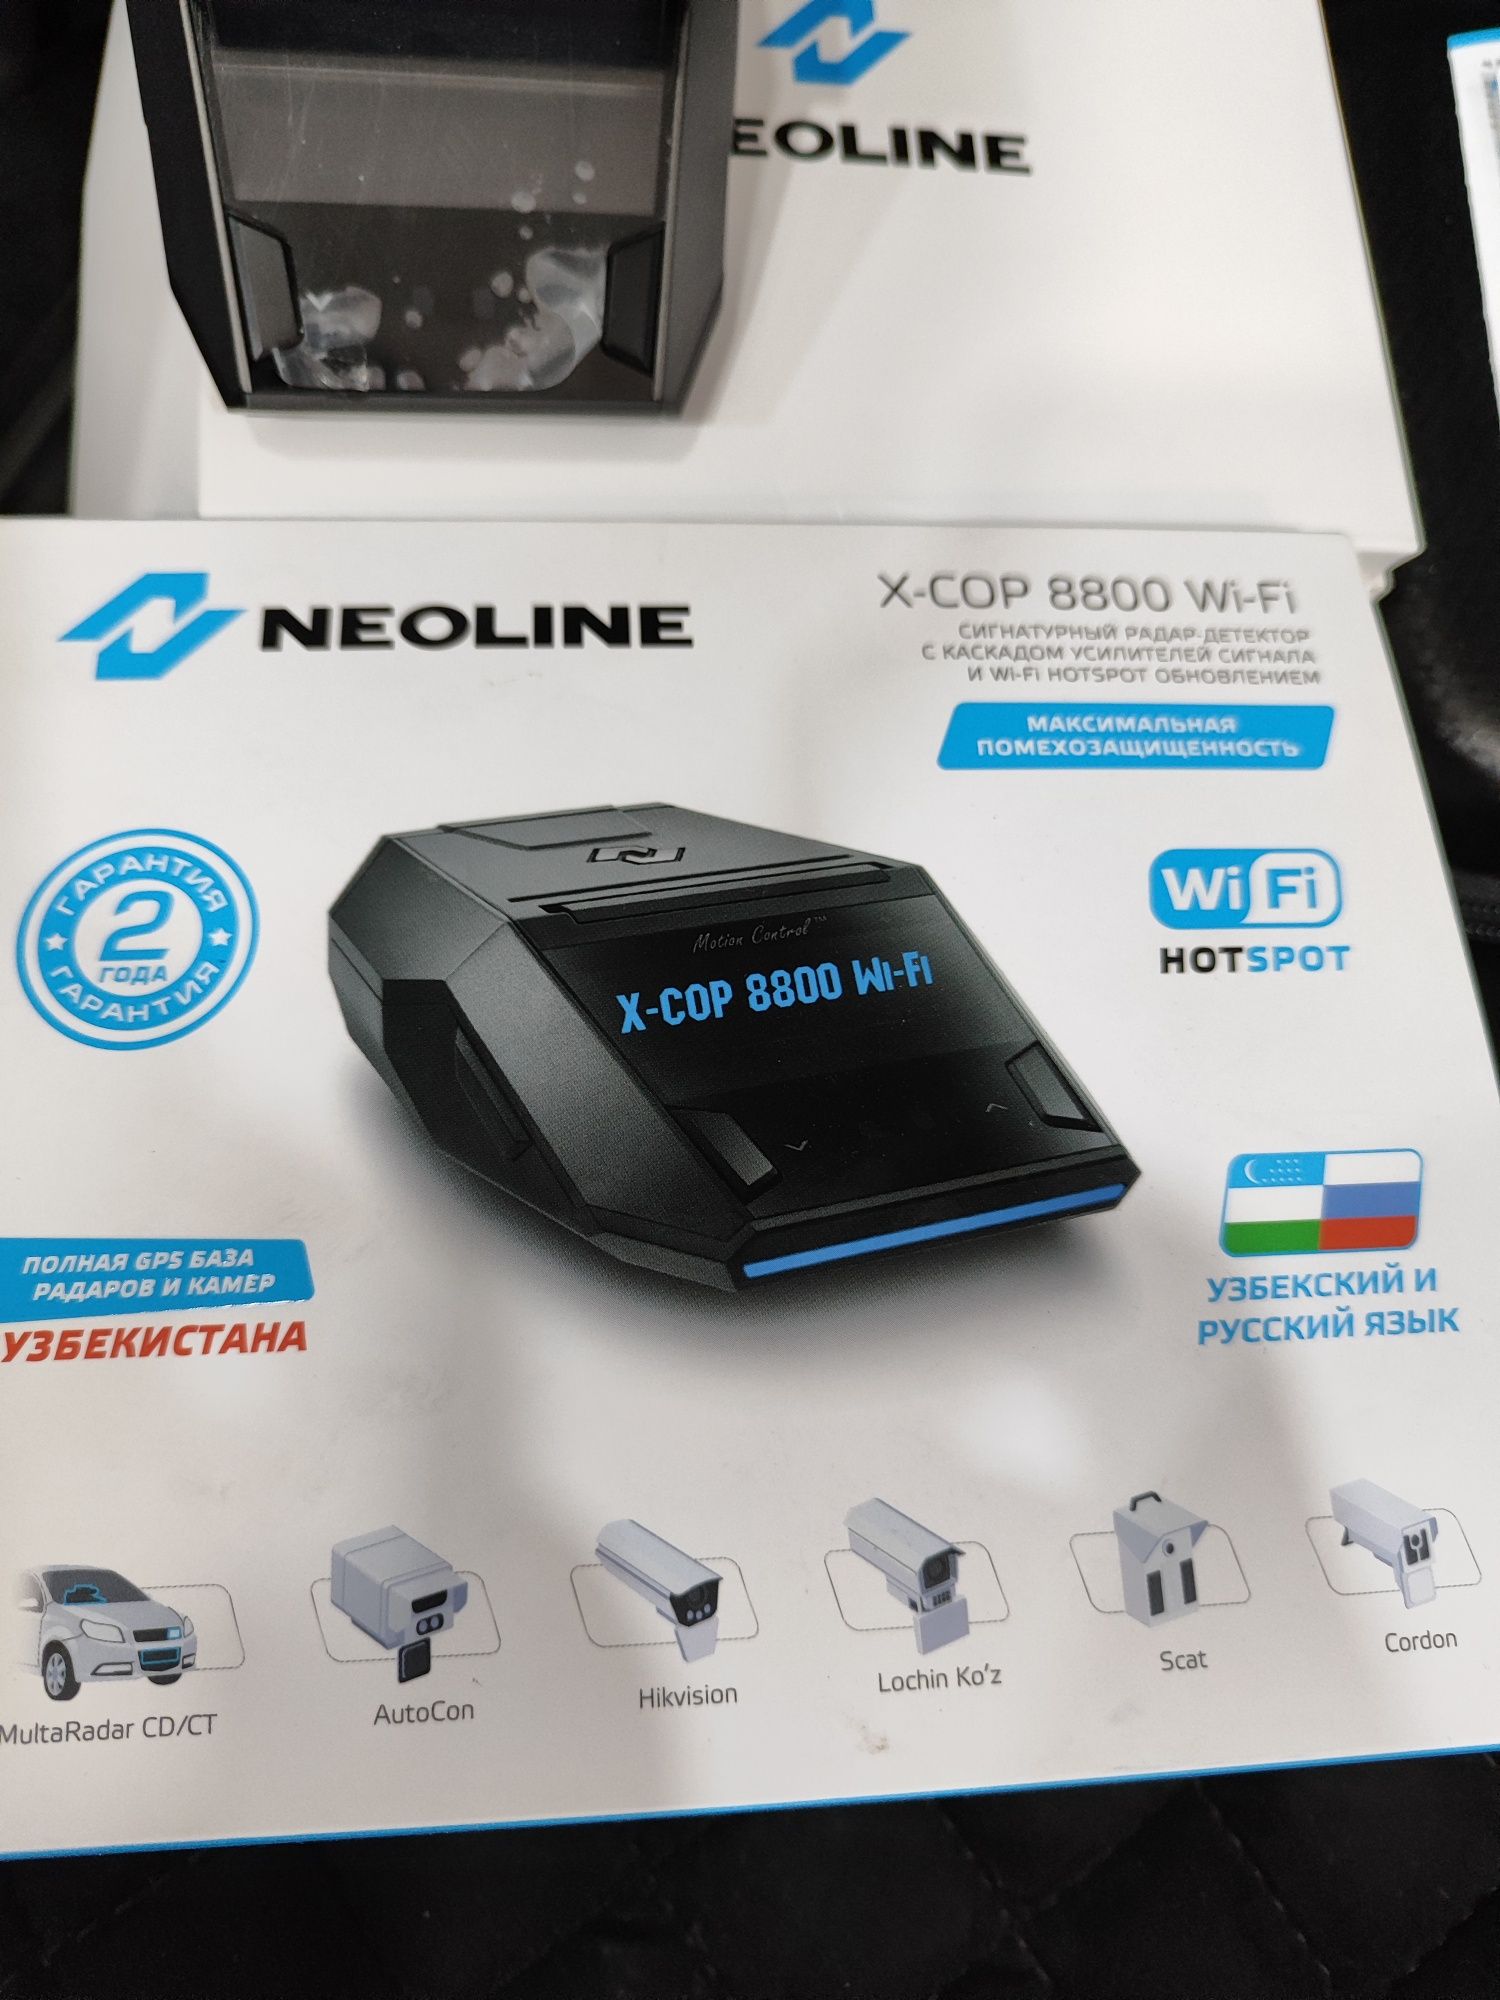 Neoline 8800 sotiladi